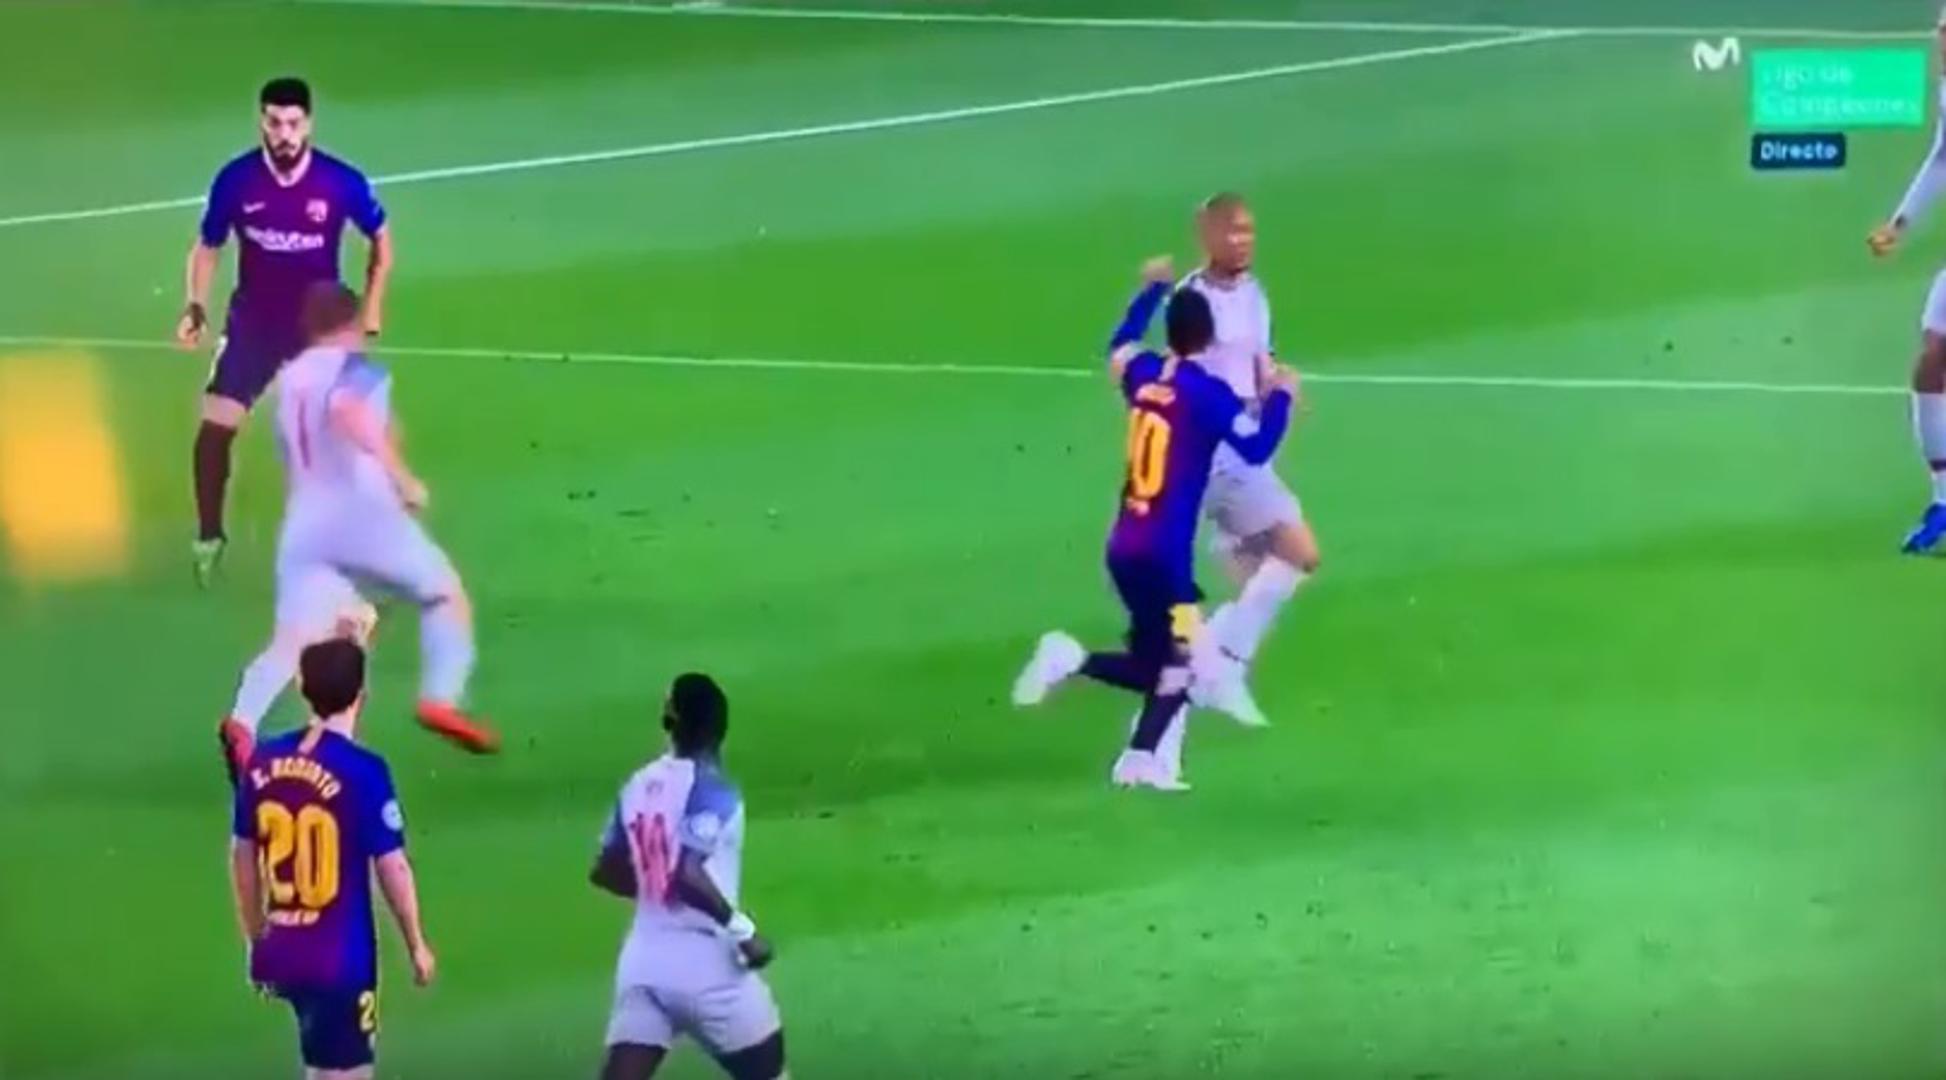 No, pojavila se snimka koja dovodi u pitanje Messijev drugi gol. Naime, vidi se da je Argentinac netom prije prekršaja natrčao na Fabinha i udario ga šakom u glavu.